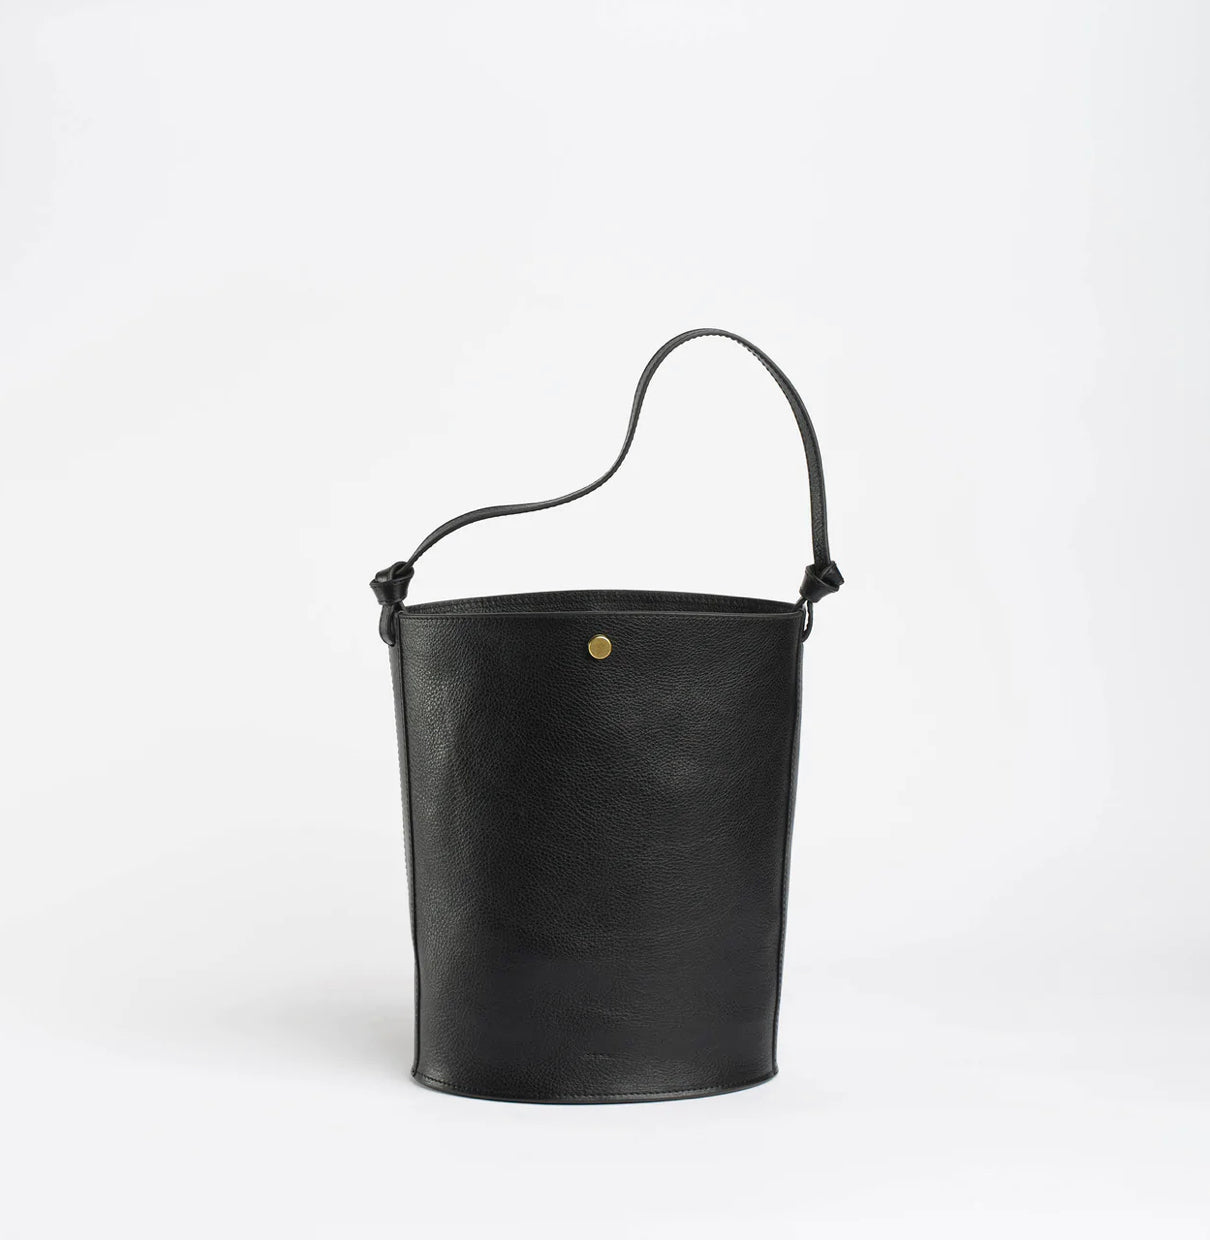 Hilma Large Leather Bucket Bag